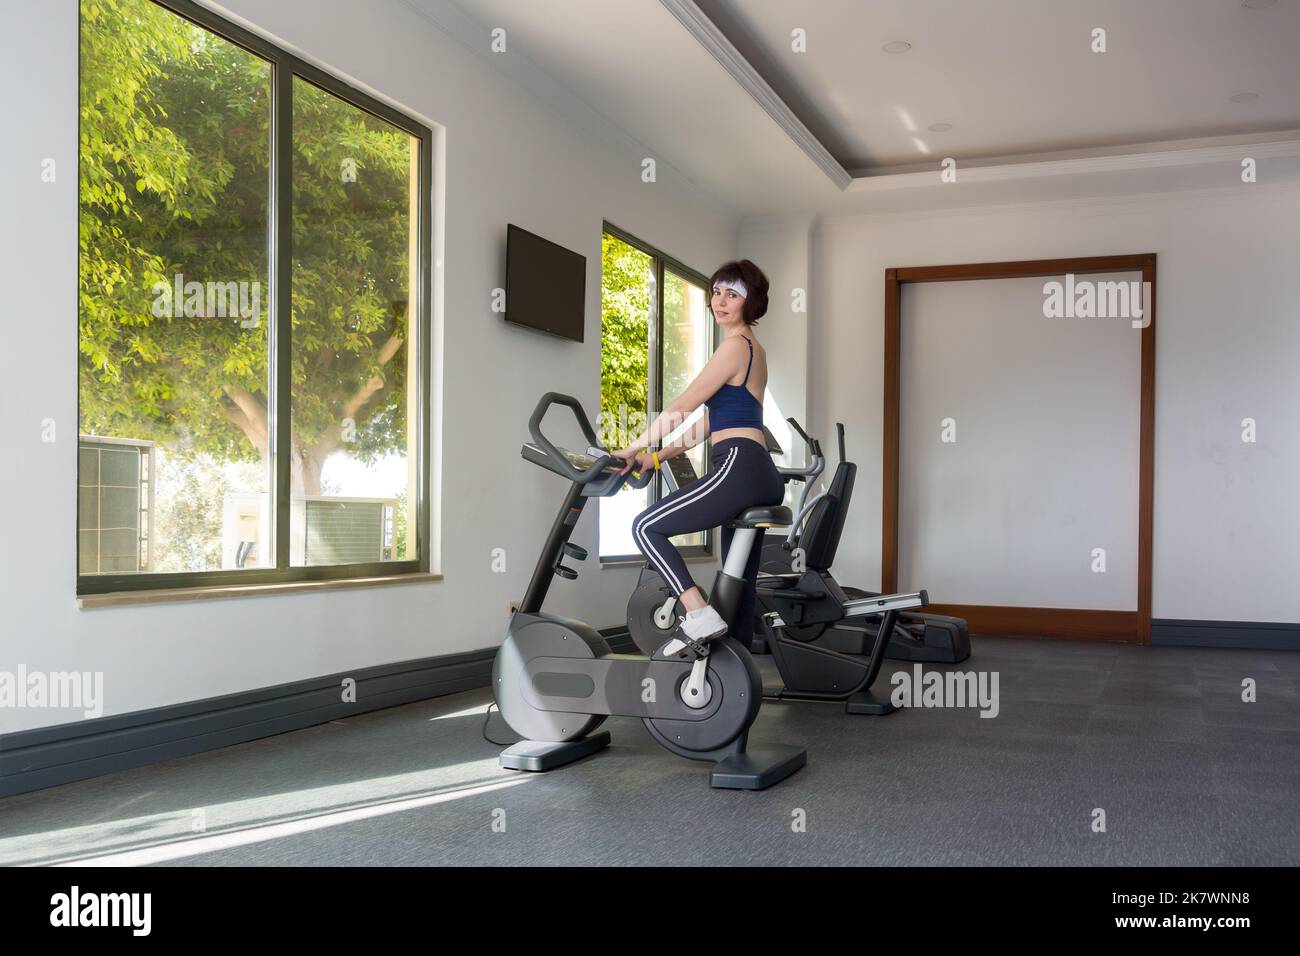 Une femme de 40-44 ans est engagée dans une salle de sport sur un vélo d'exercice. Banque D'Images